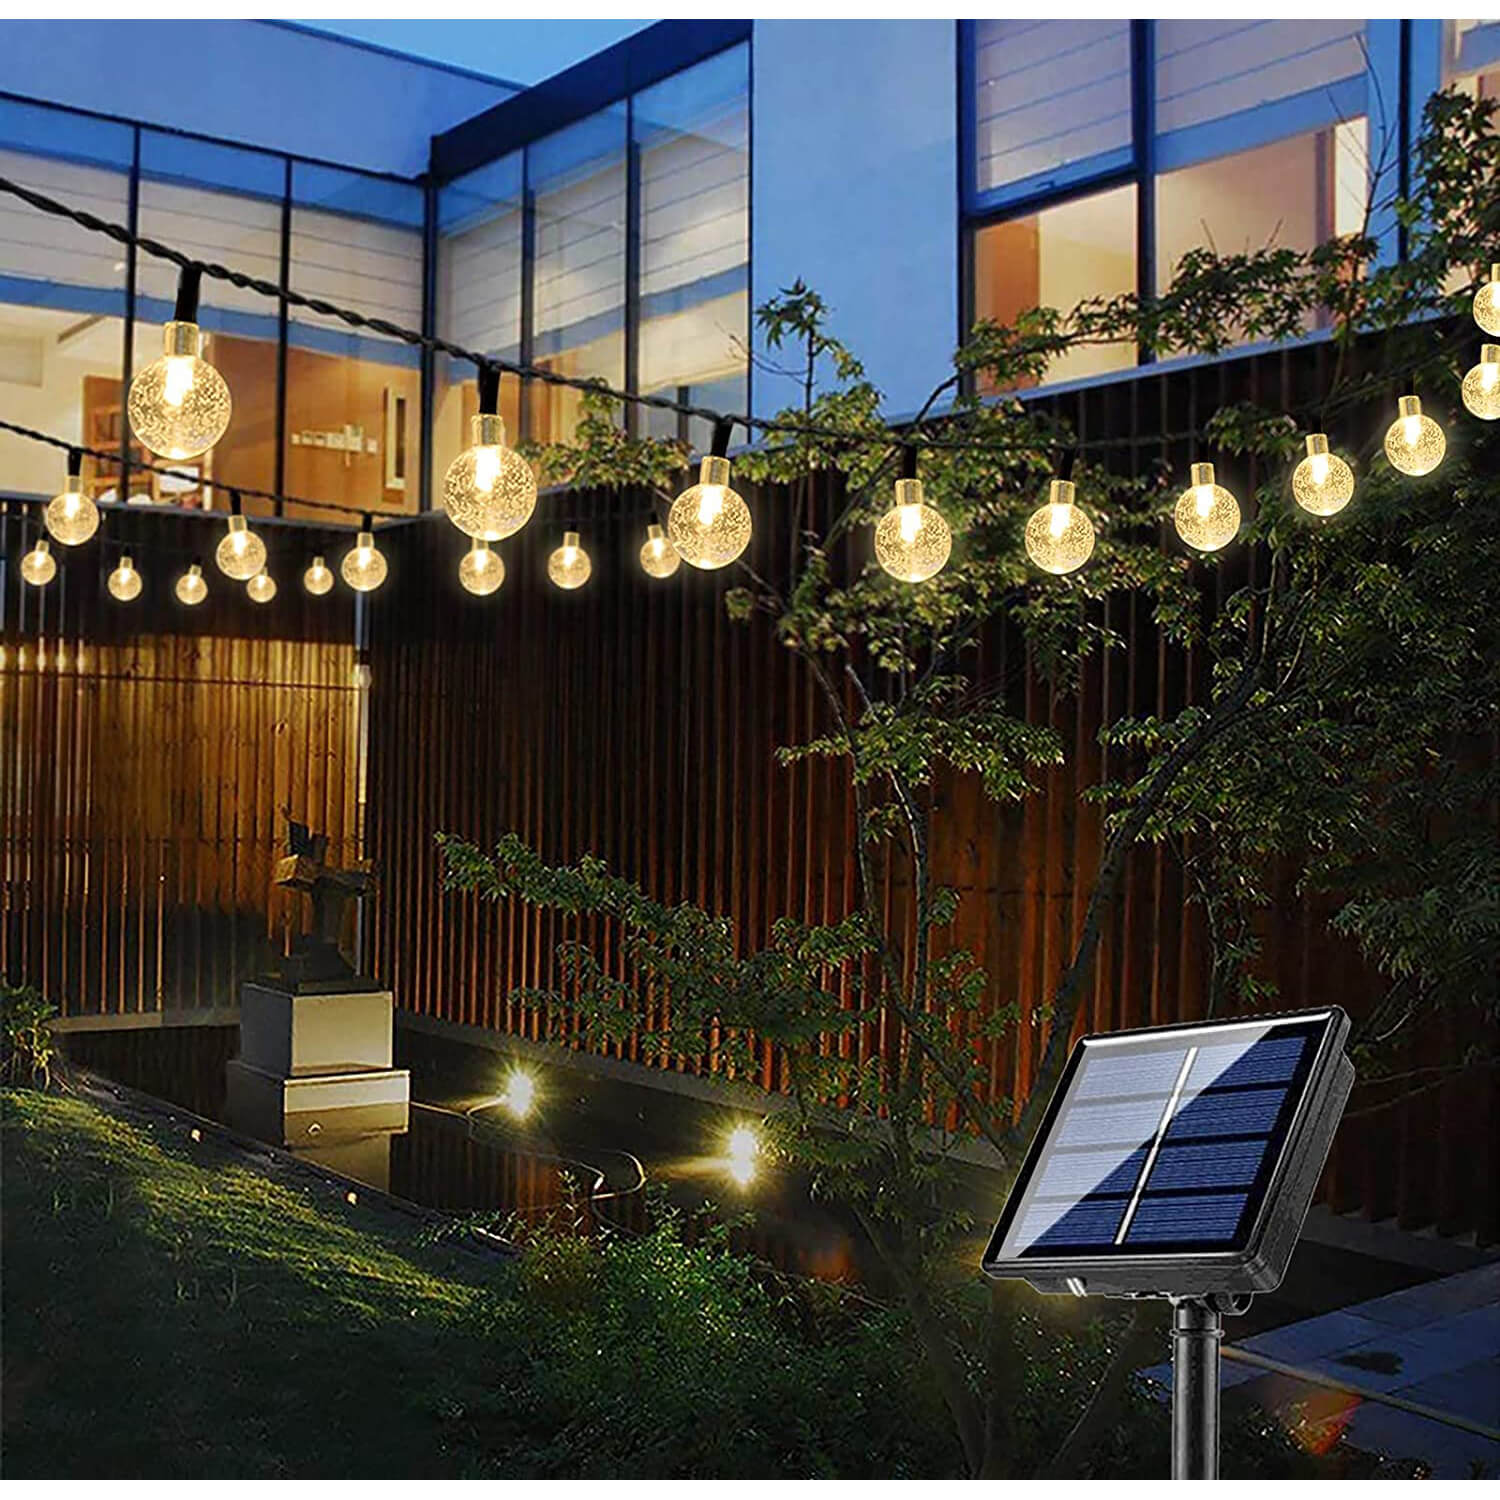 BTeng Solar Garden Lights